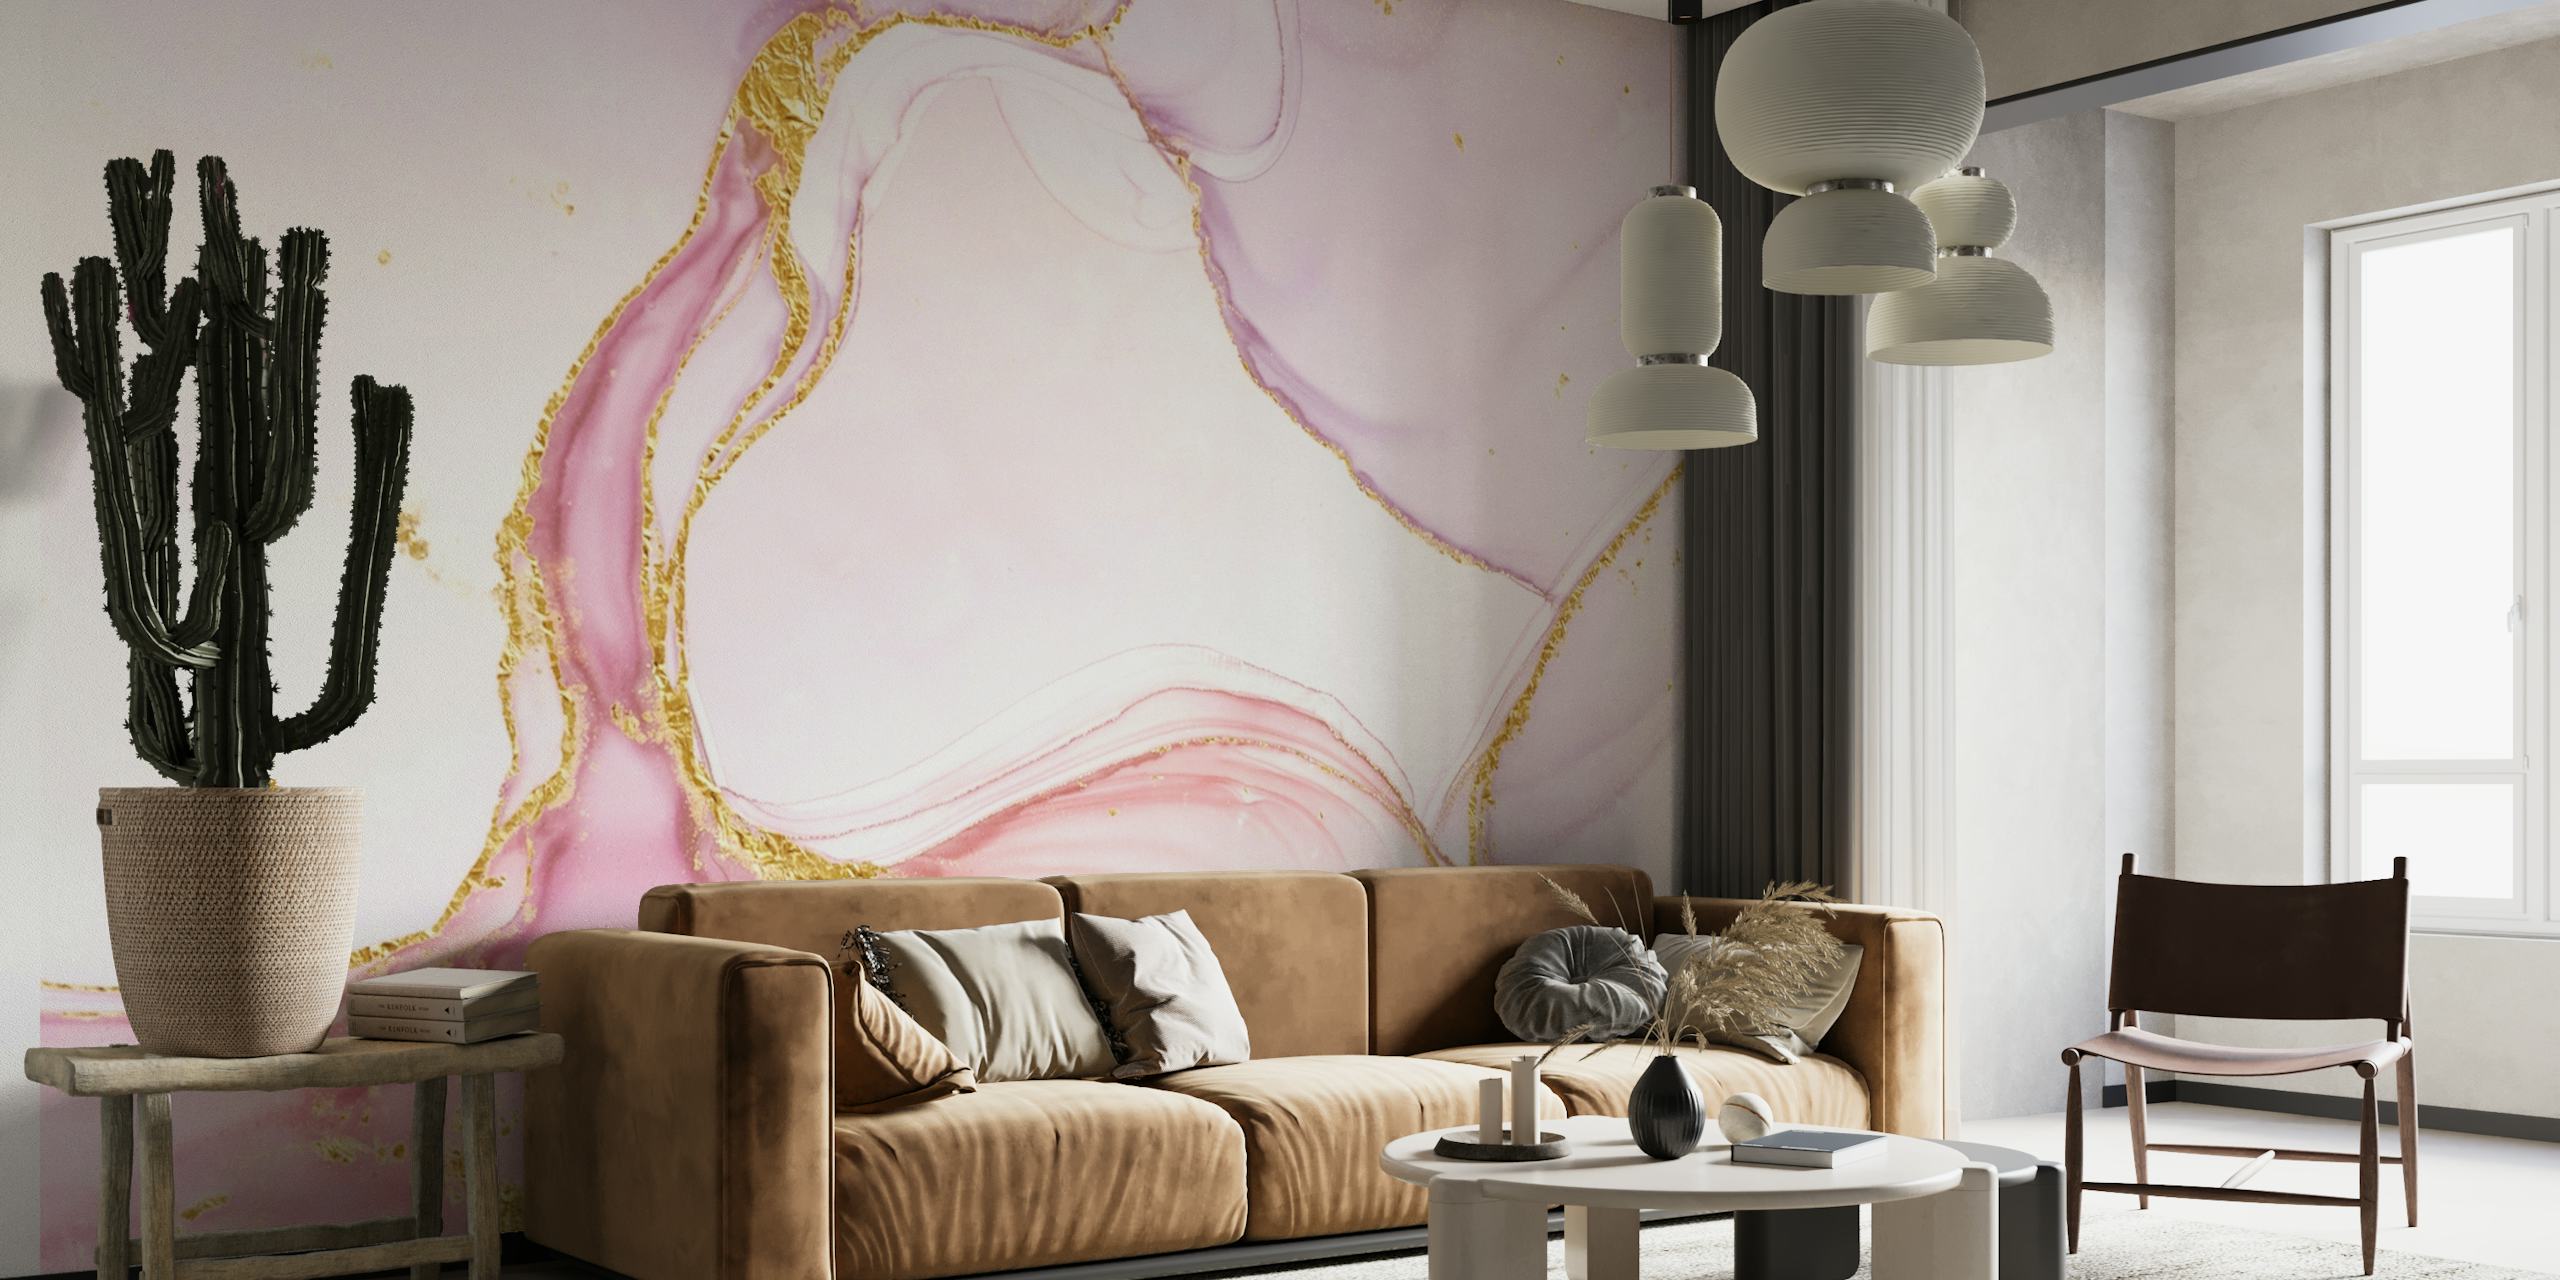 Papier peint mural en marbre rose à l'encre d'alcool avec des tourbillons roses et blancs et des accents dorés